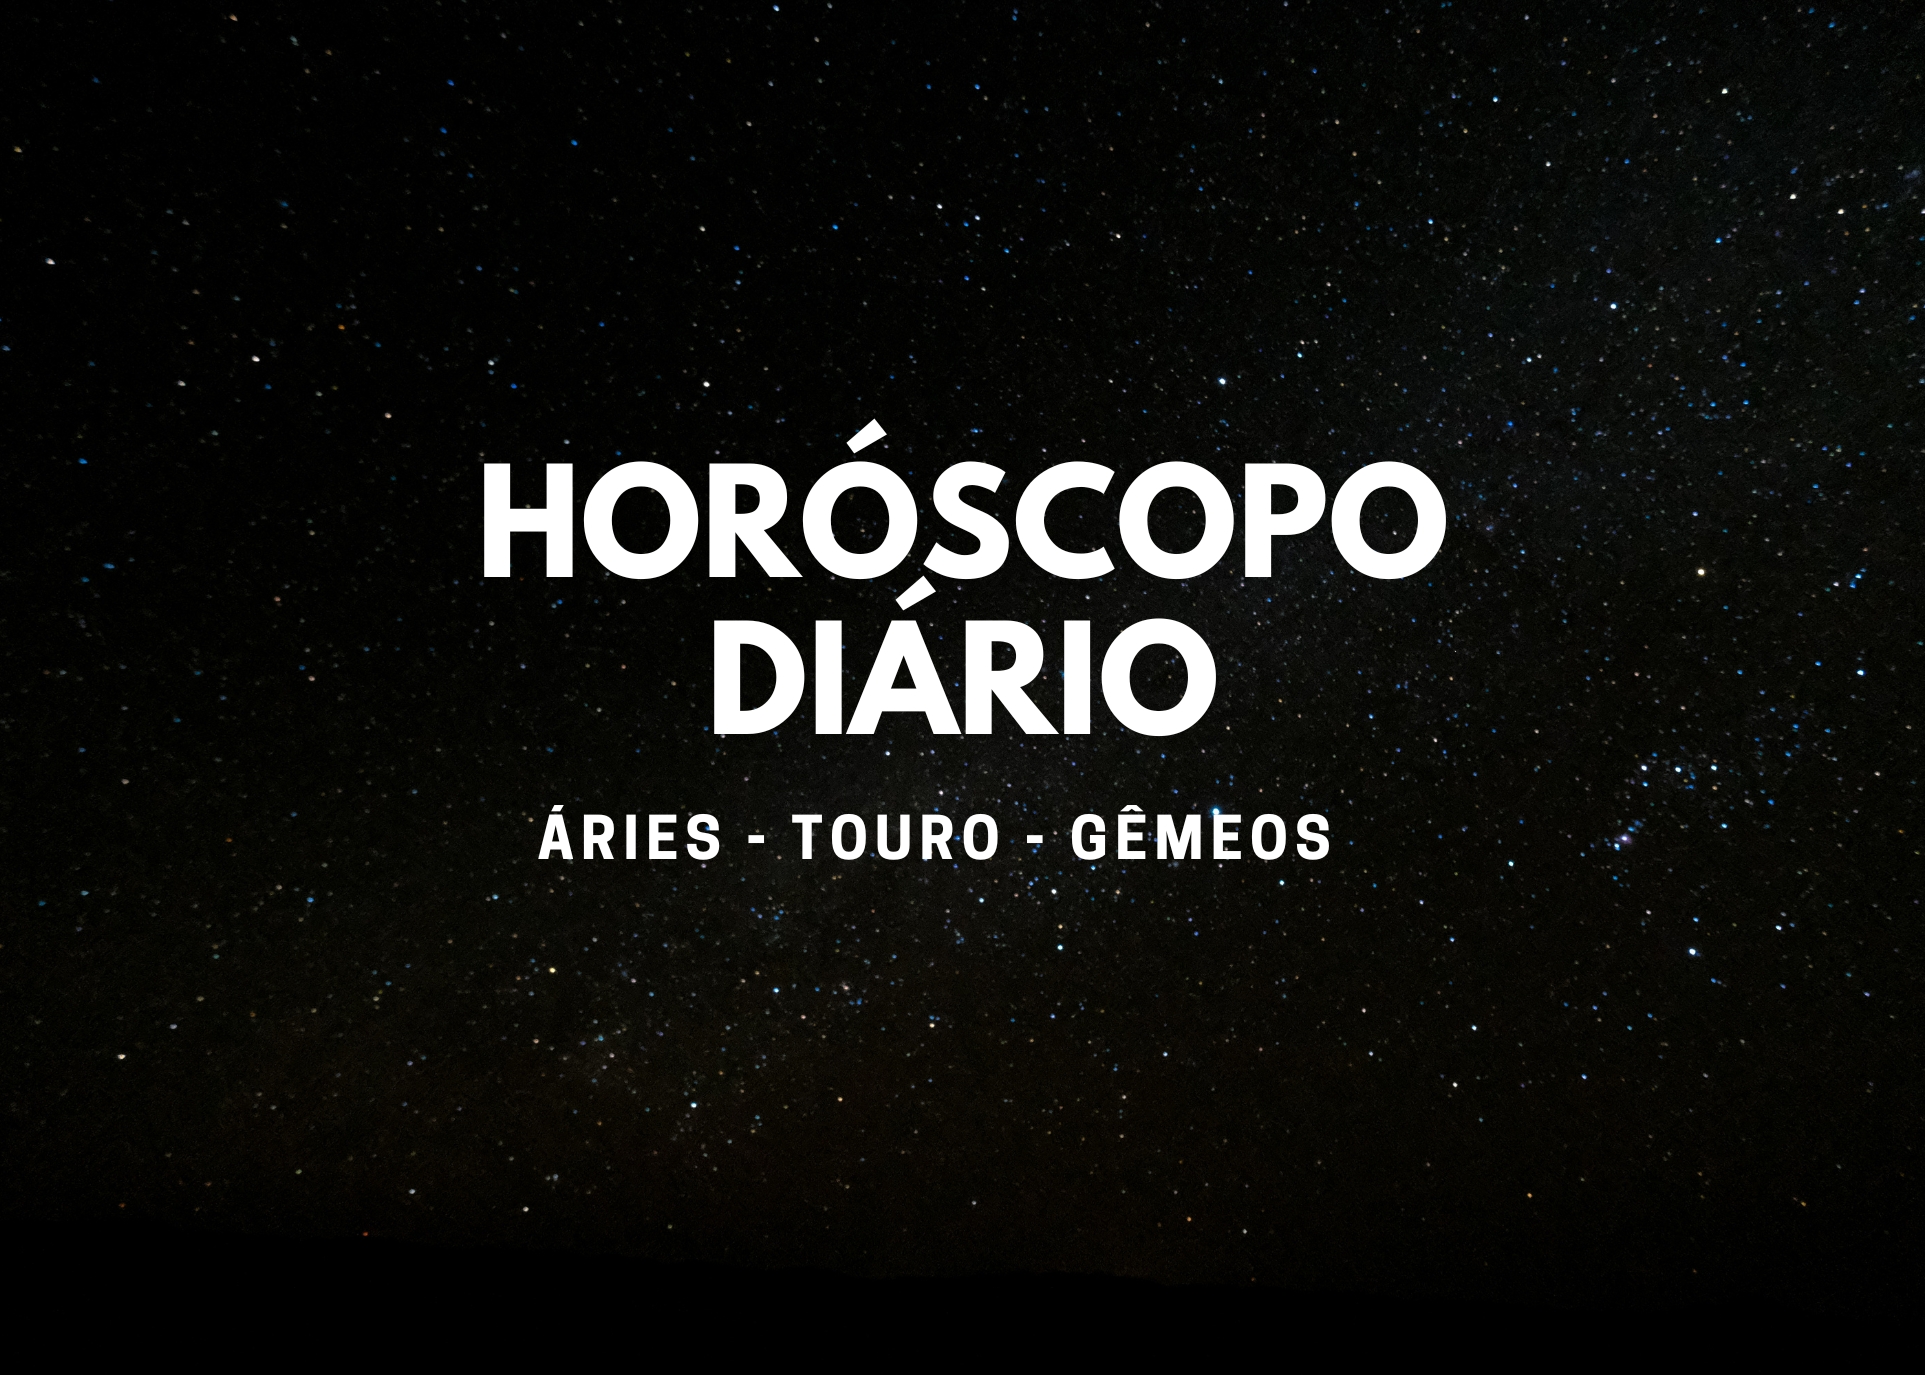 O que dizem os astros? Horóscopo de hoje (29/09) para Áries, Touro e Gêmeos